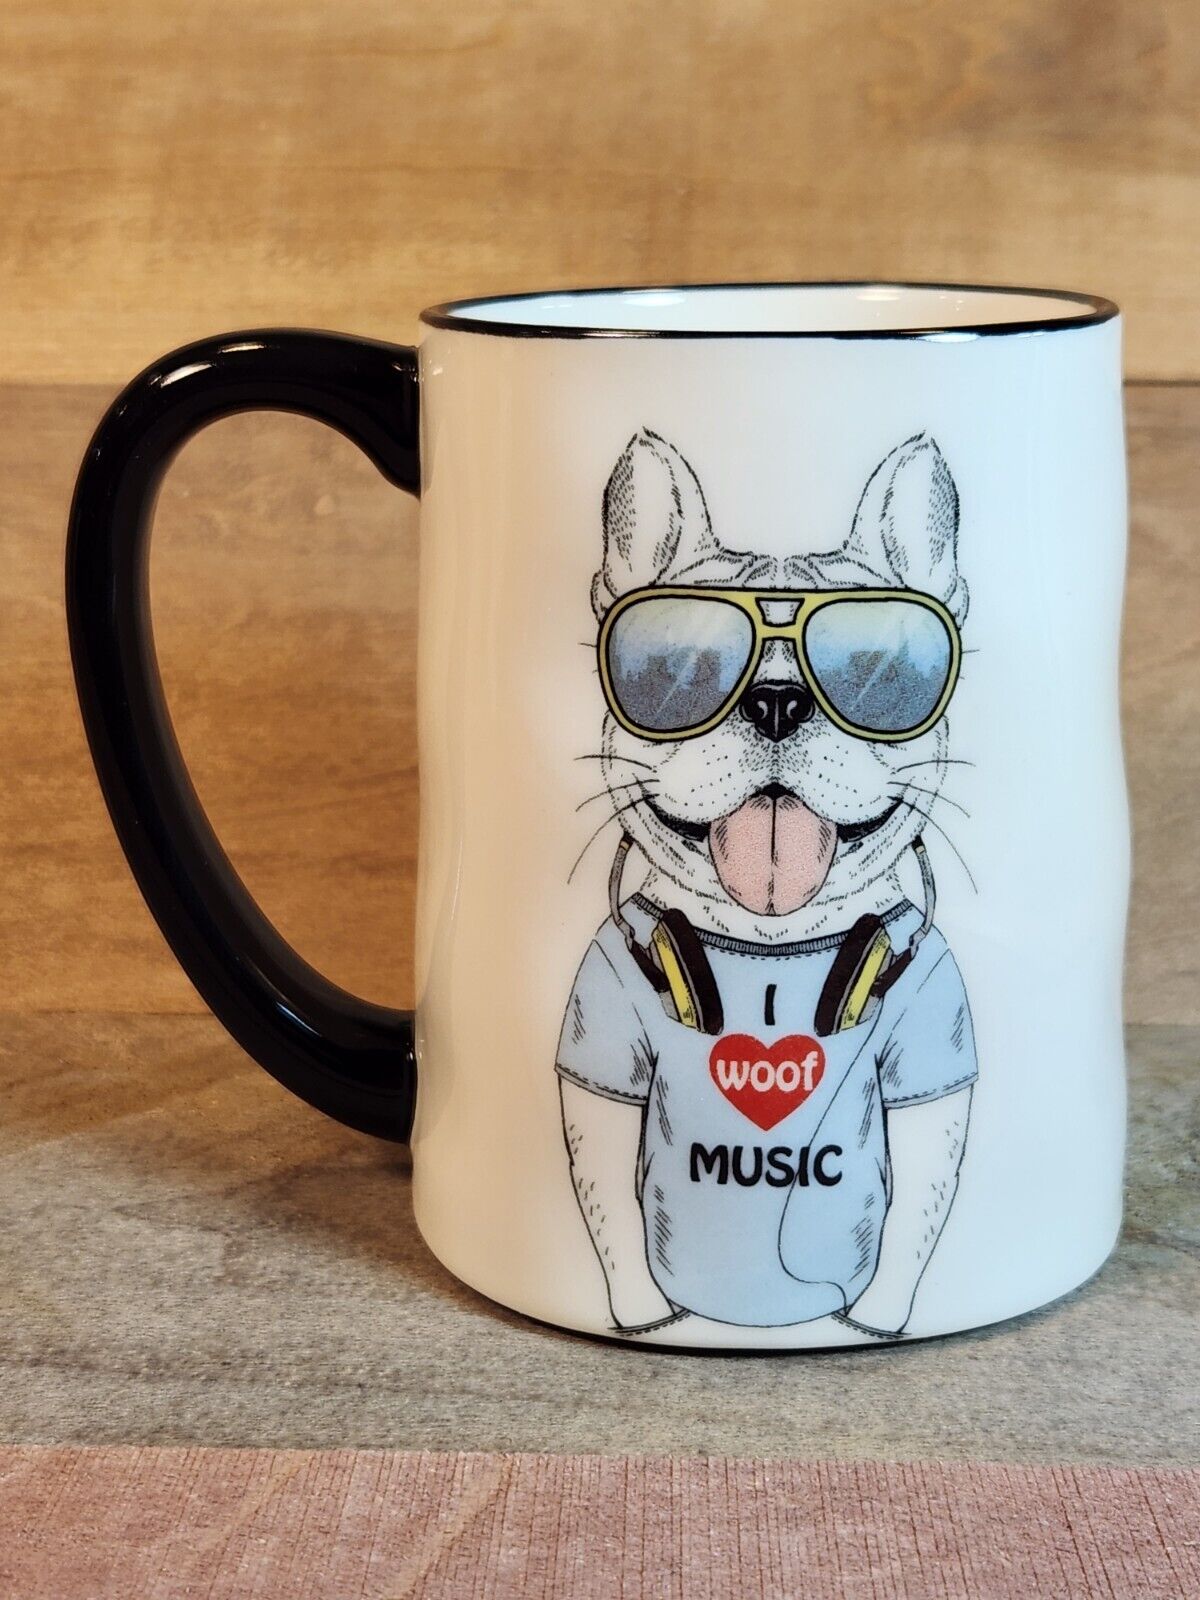 SIGNATURE HOMEWARES INC Hipster Dog Mug “I Woof Music” White w/black Handle New